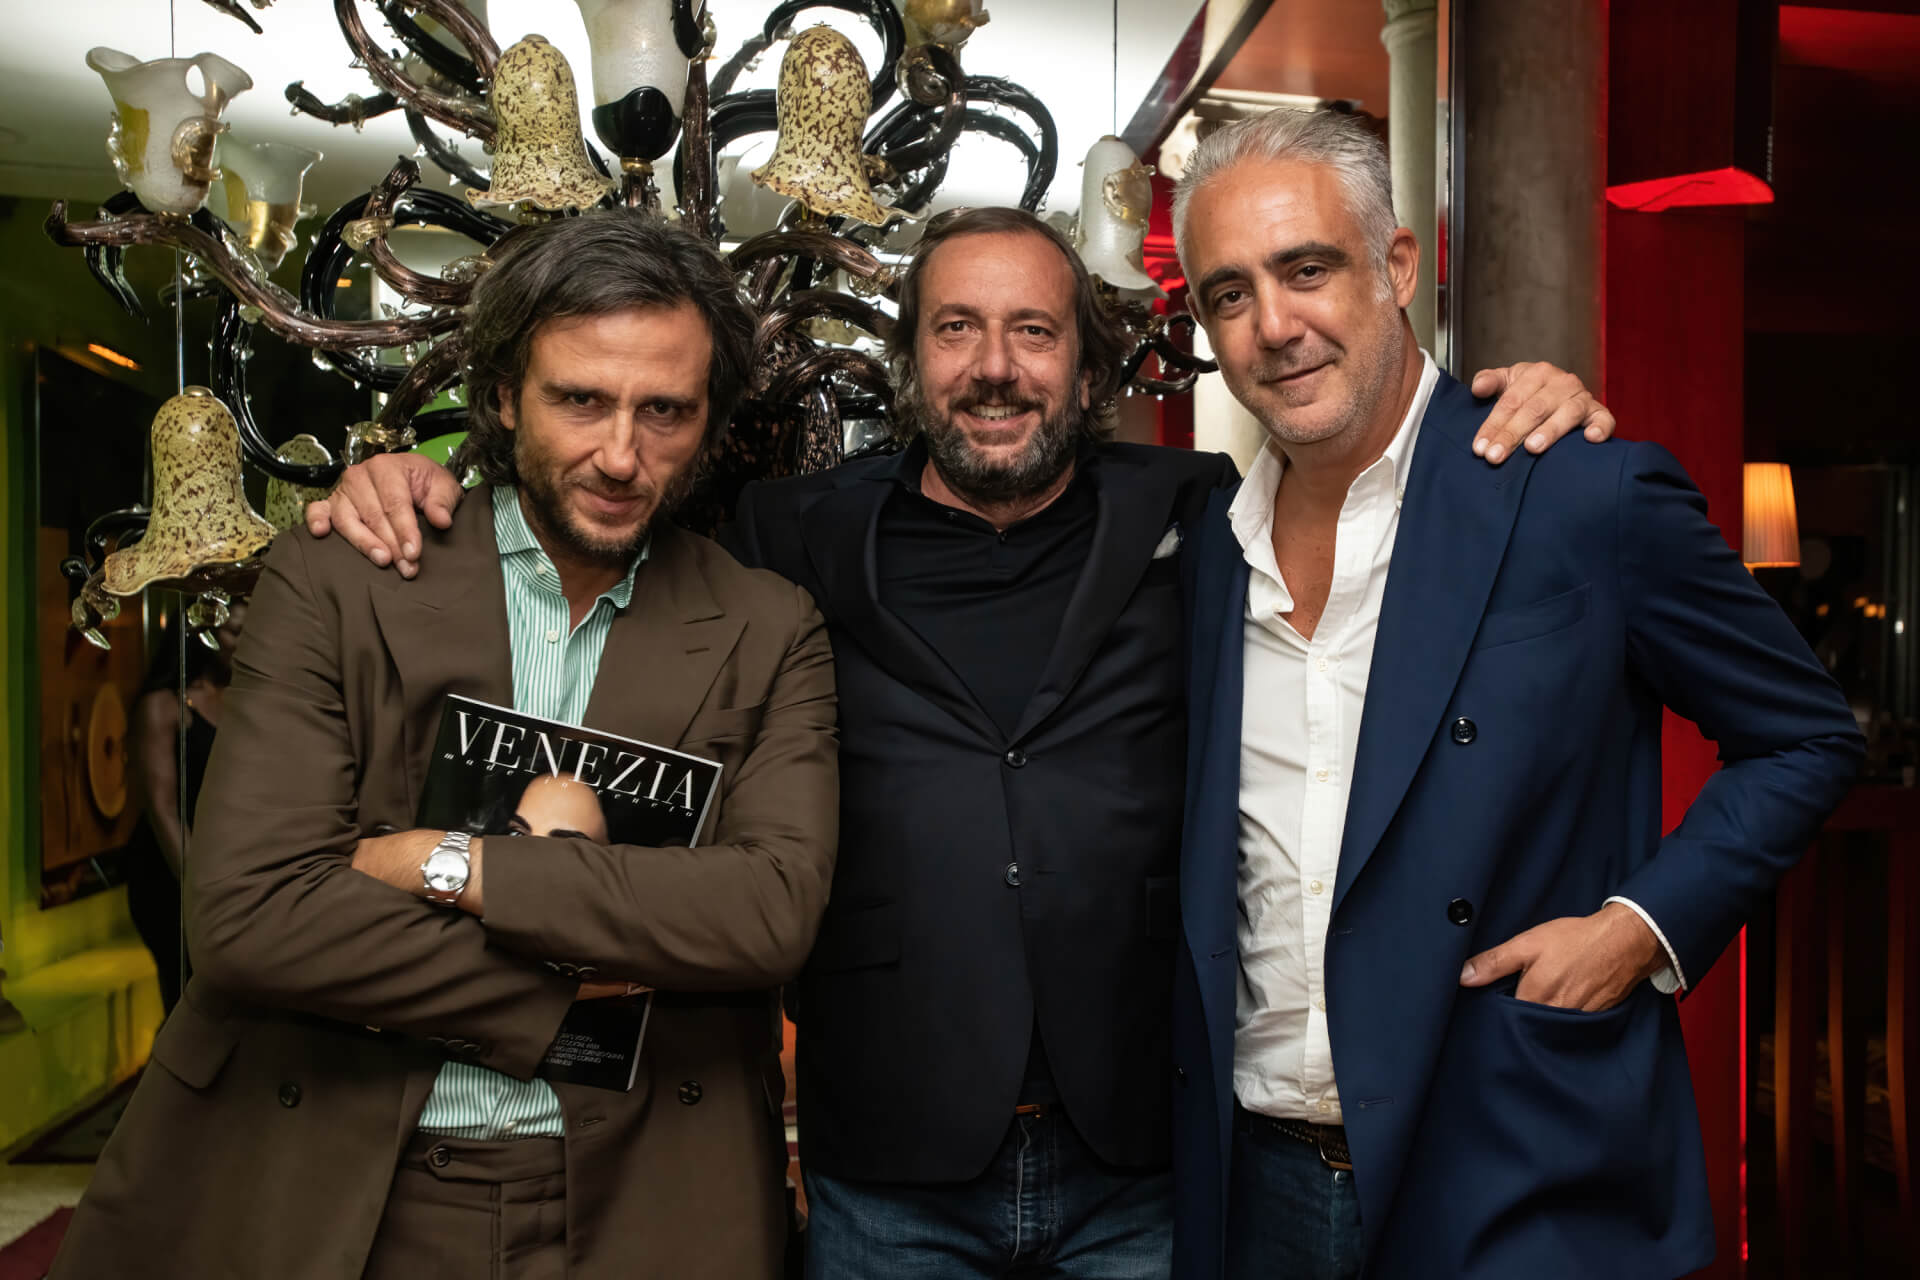 Alex Vittorio Lana, Antonio Onorato, Matteo Parigi Bini